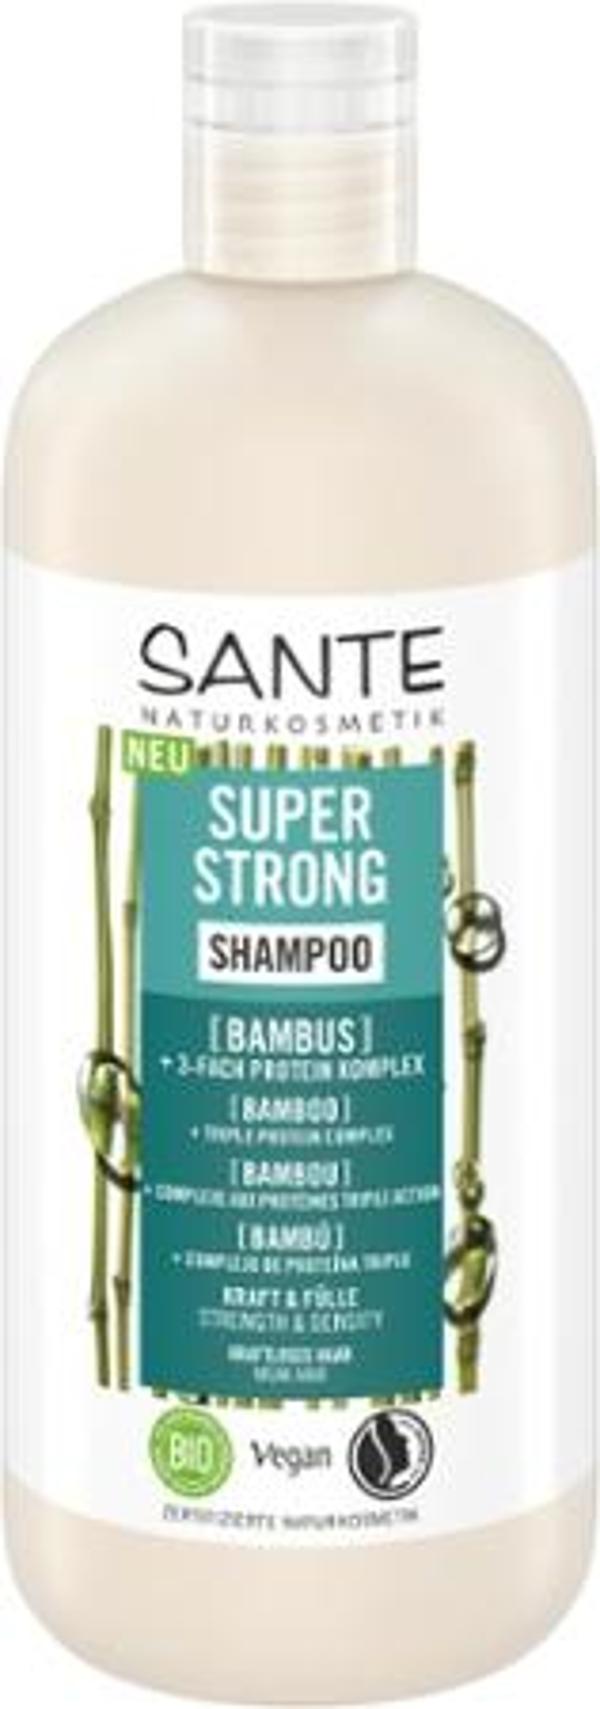 Produktfoto zu Super Strong Shampoo Bambus 500ml Sante